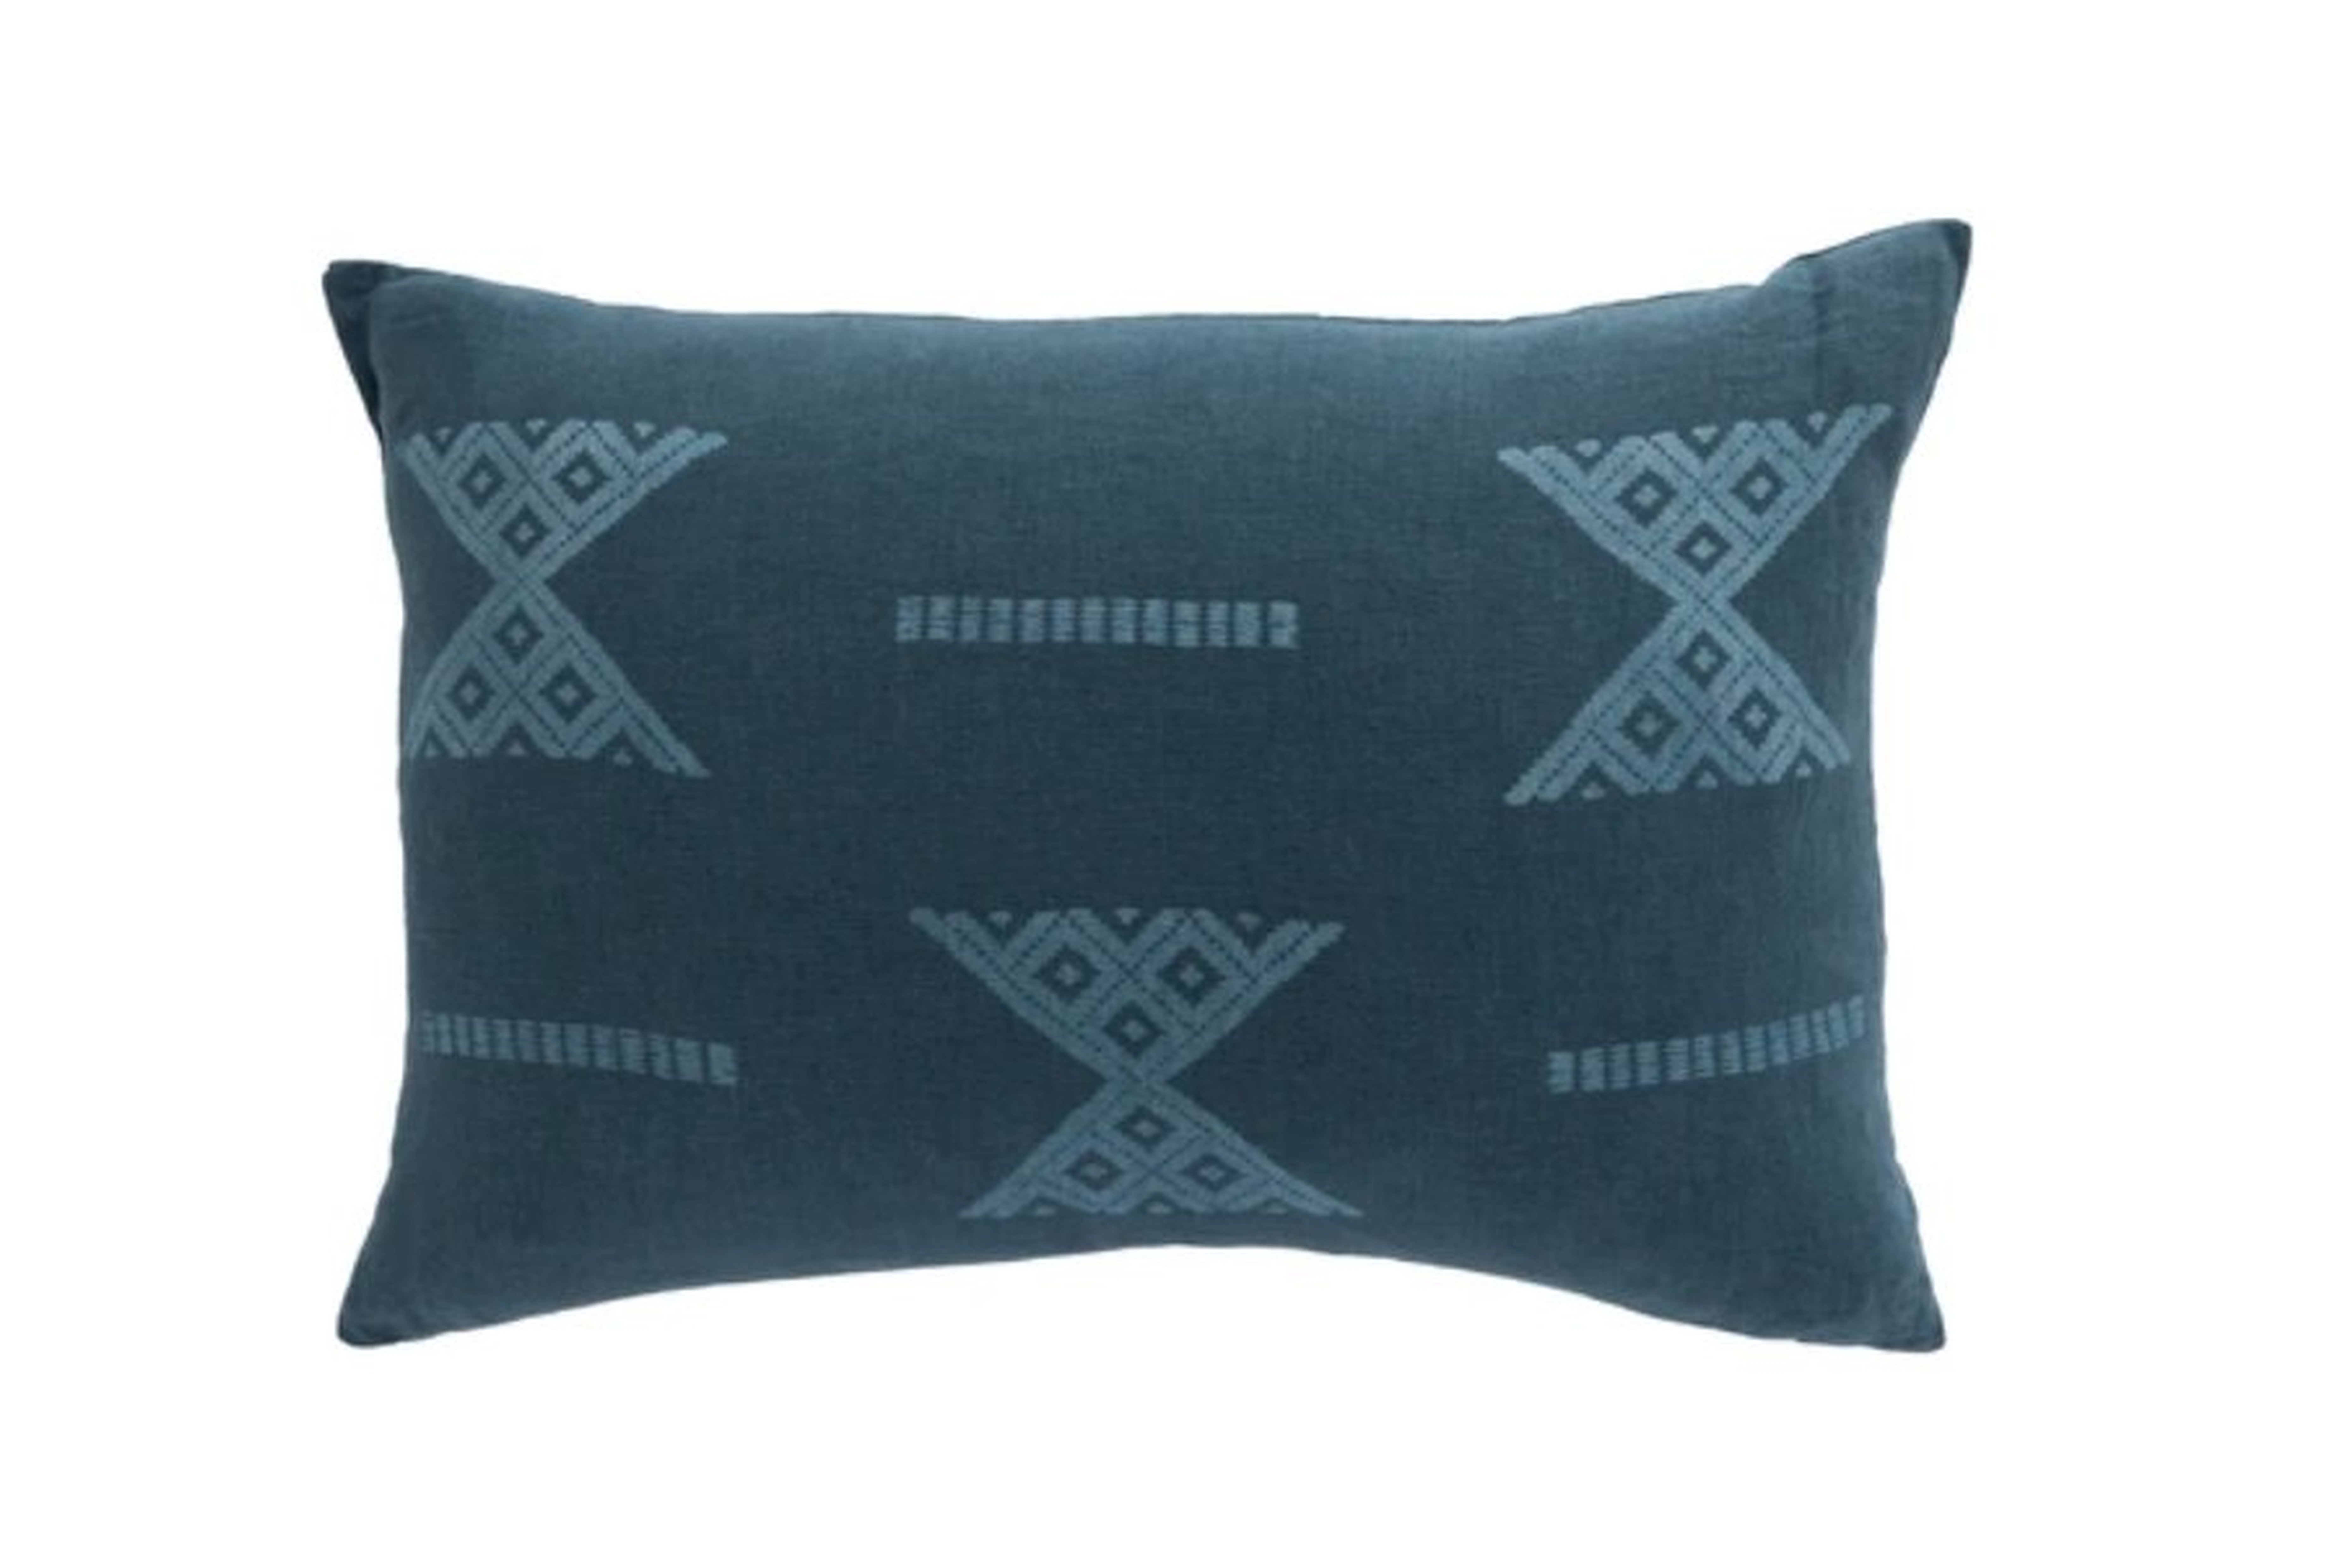 Zuria Woven Pillow, 16" x 26" - McGee & Co.